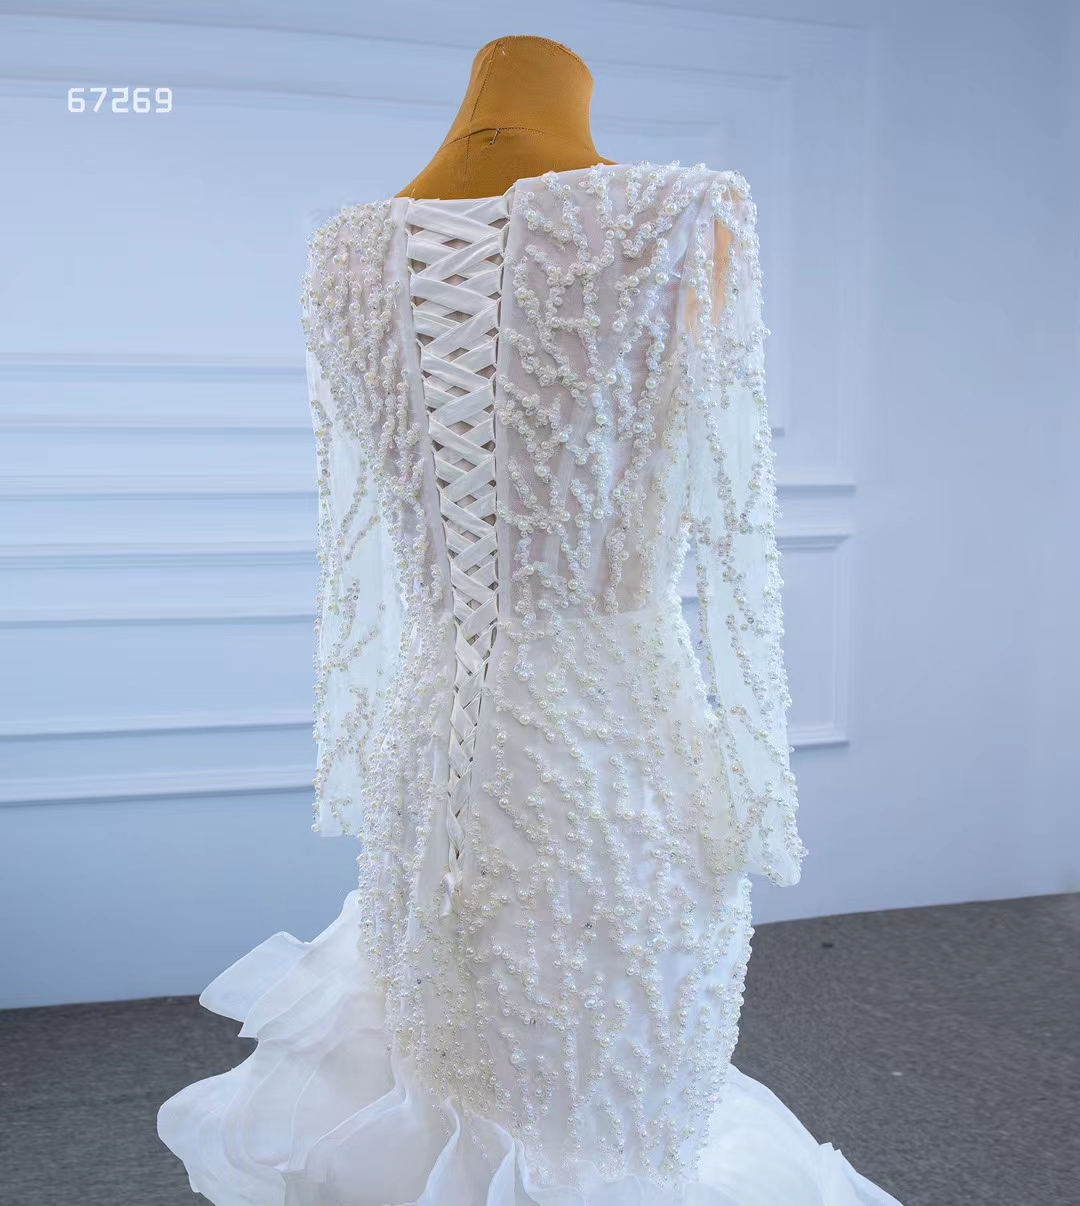 Meerjungfrau-Hochzeitskleid, luxuriöse Spitze, volle Ärmel, tiefer V-Ausschnitt, plissiert, Perlen, PaillettenSM67269